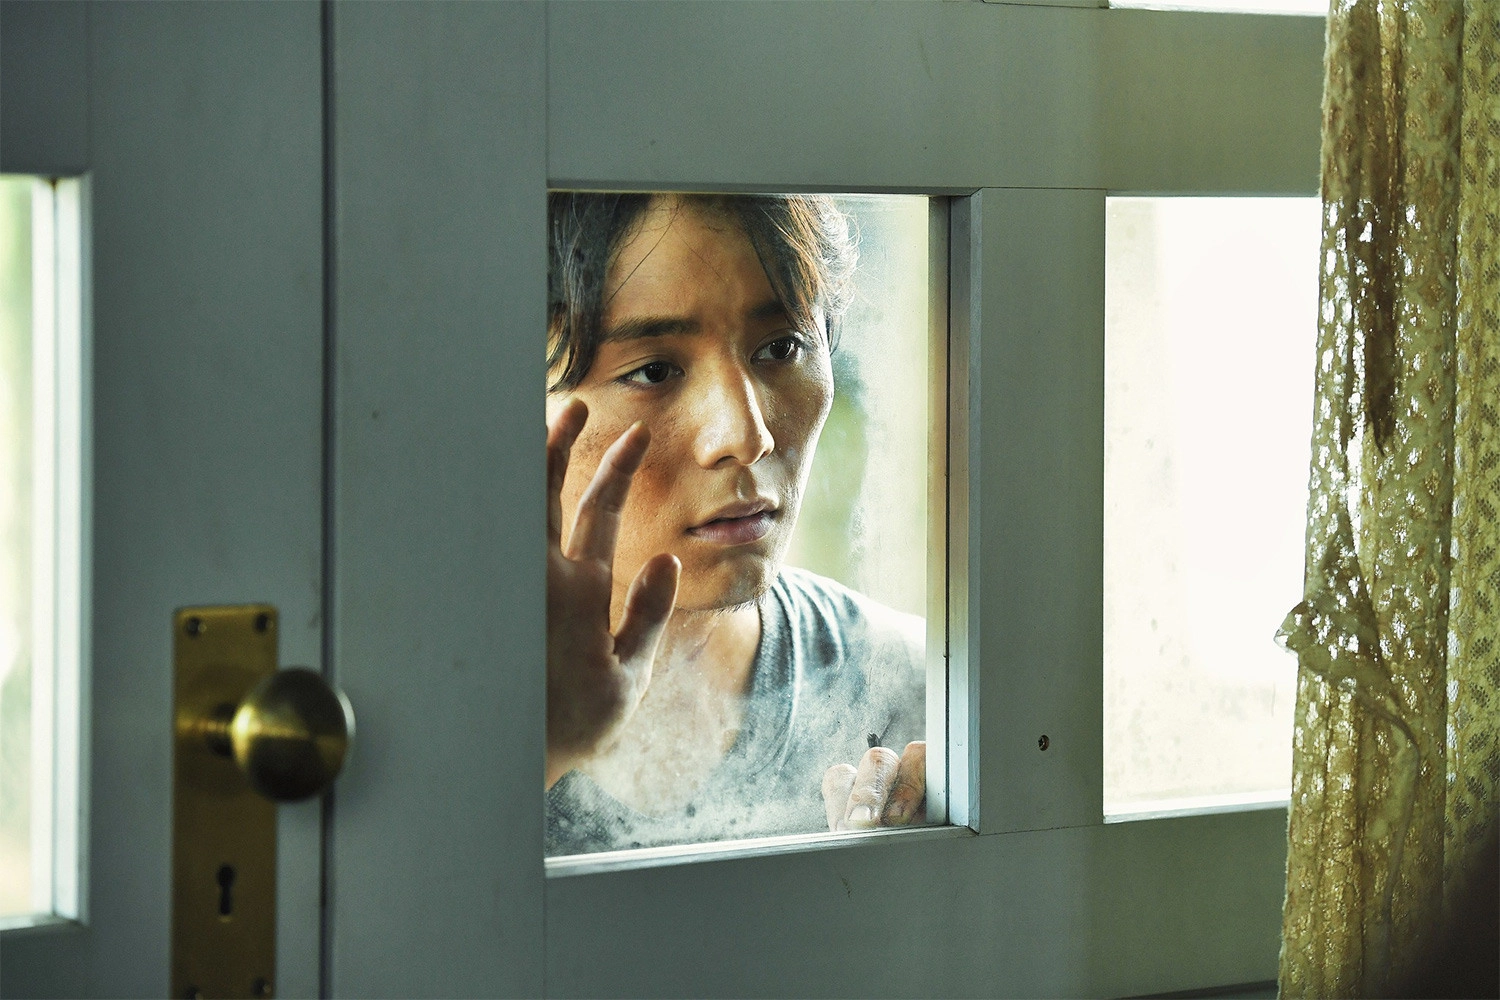 Ryosuke Yamada, với ánh mắt buồn và những cử chỉ tinh tế, đã thành công trong việc thể hiện hình ảnh của Aoi